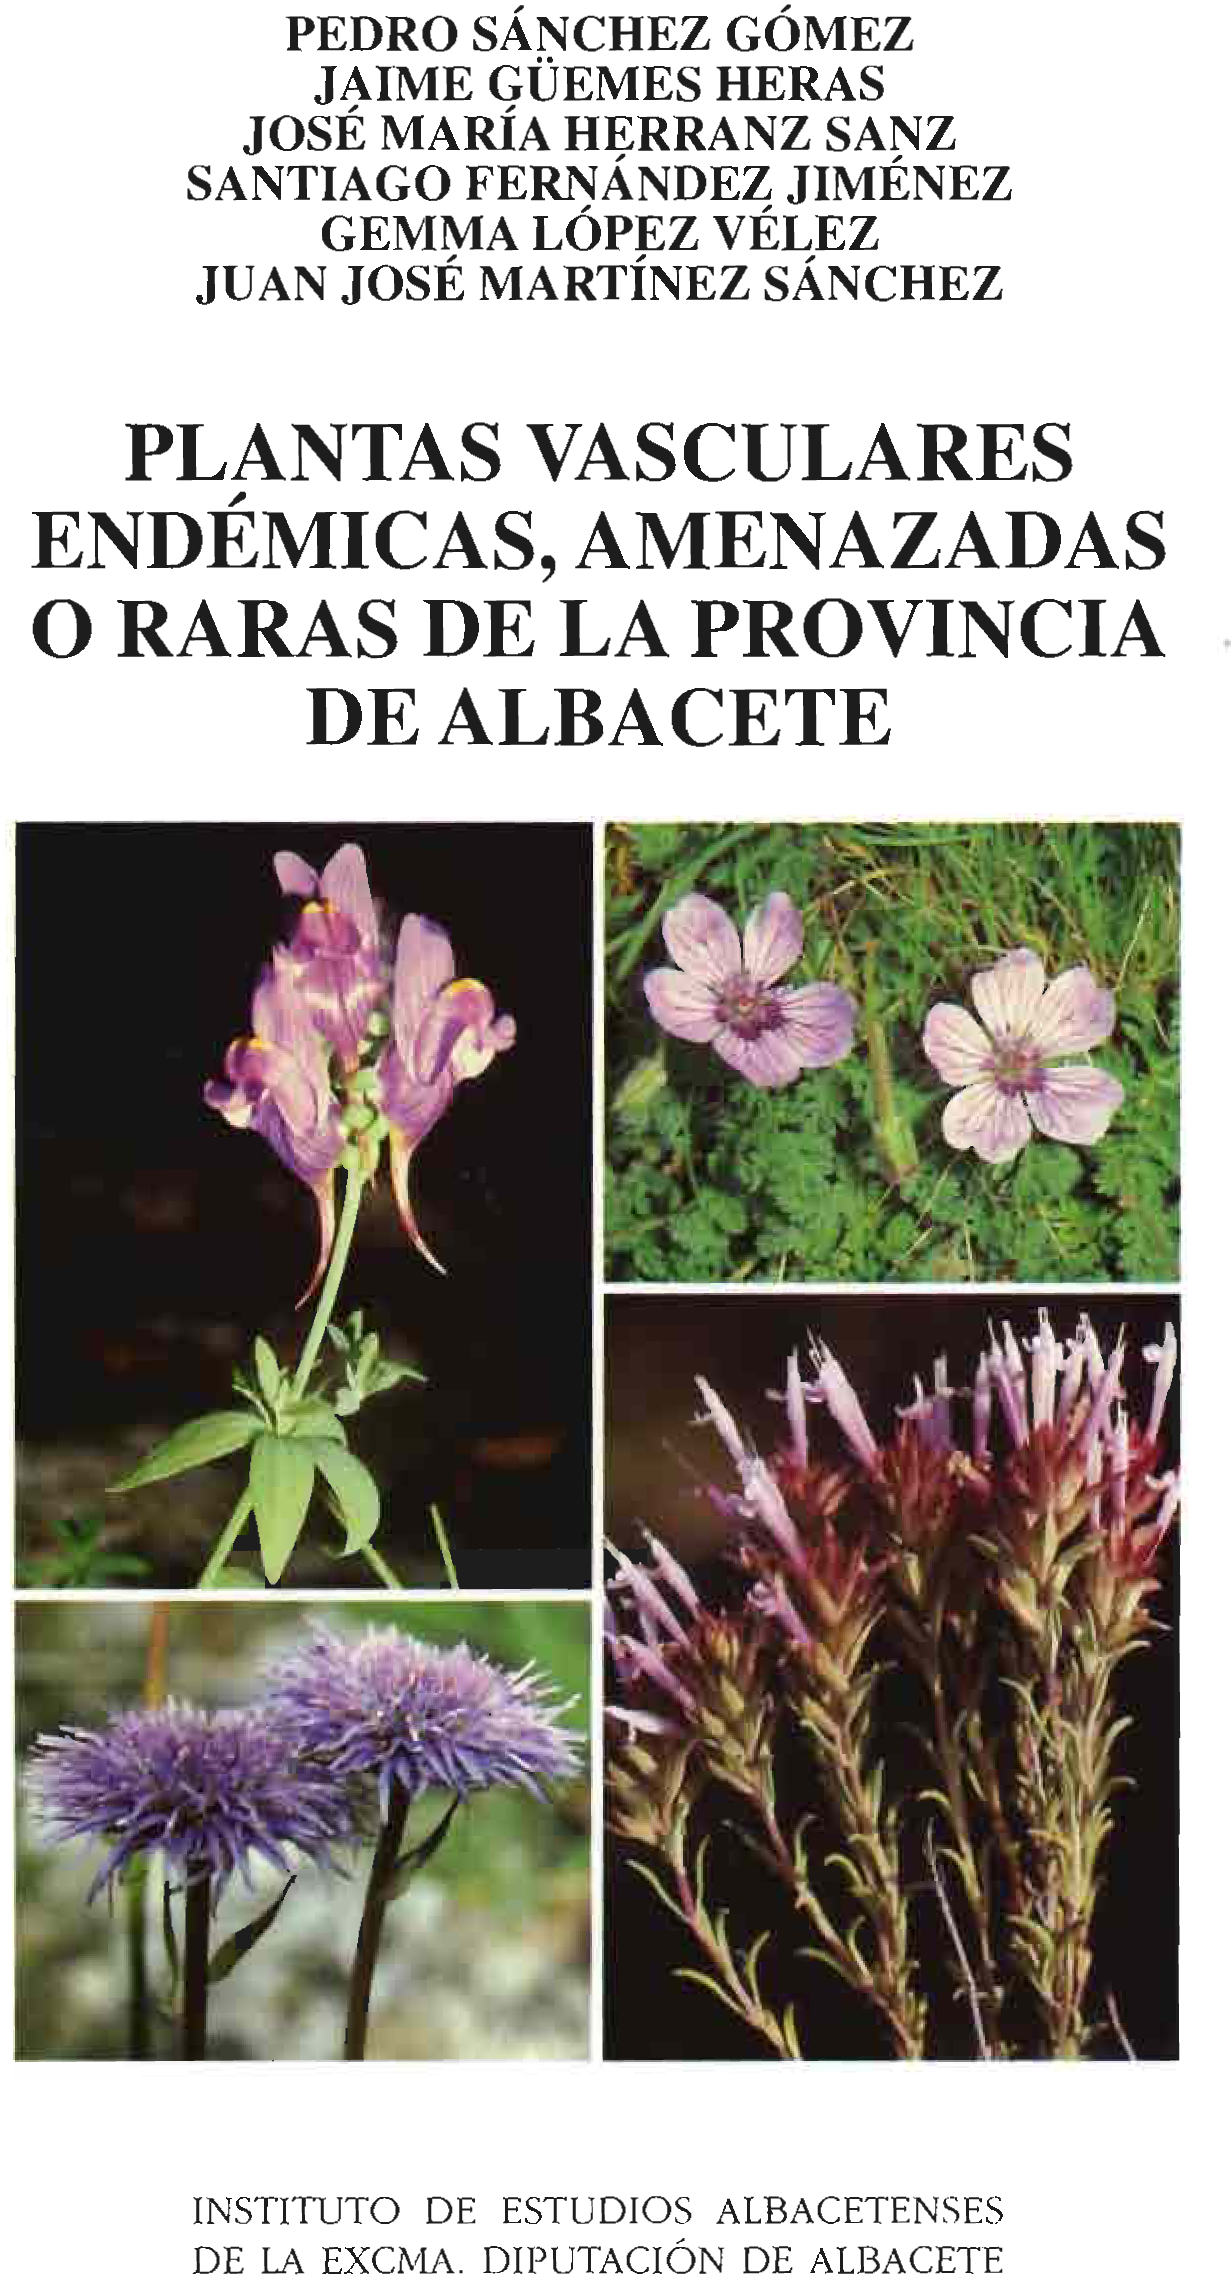 Imagen de portada del libro Plantas vasculares endémicas, amenazadas o raras de la provincia de Albacete